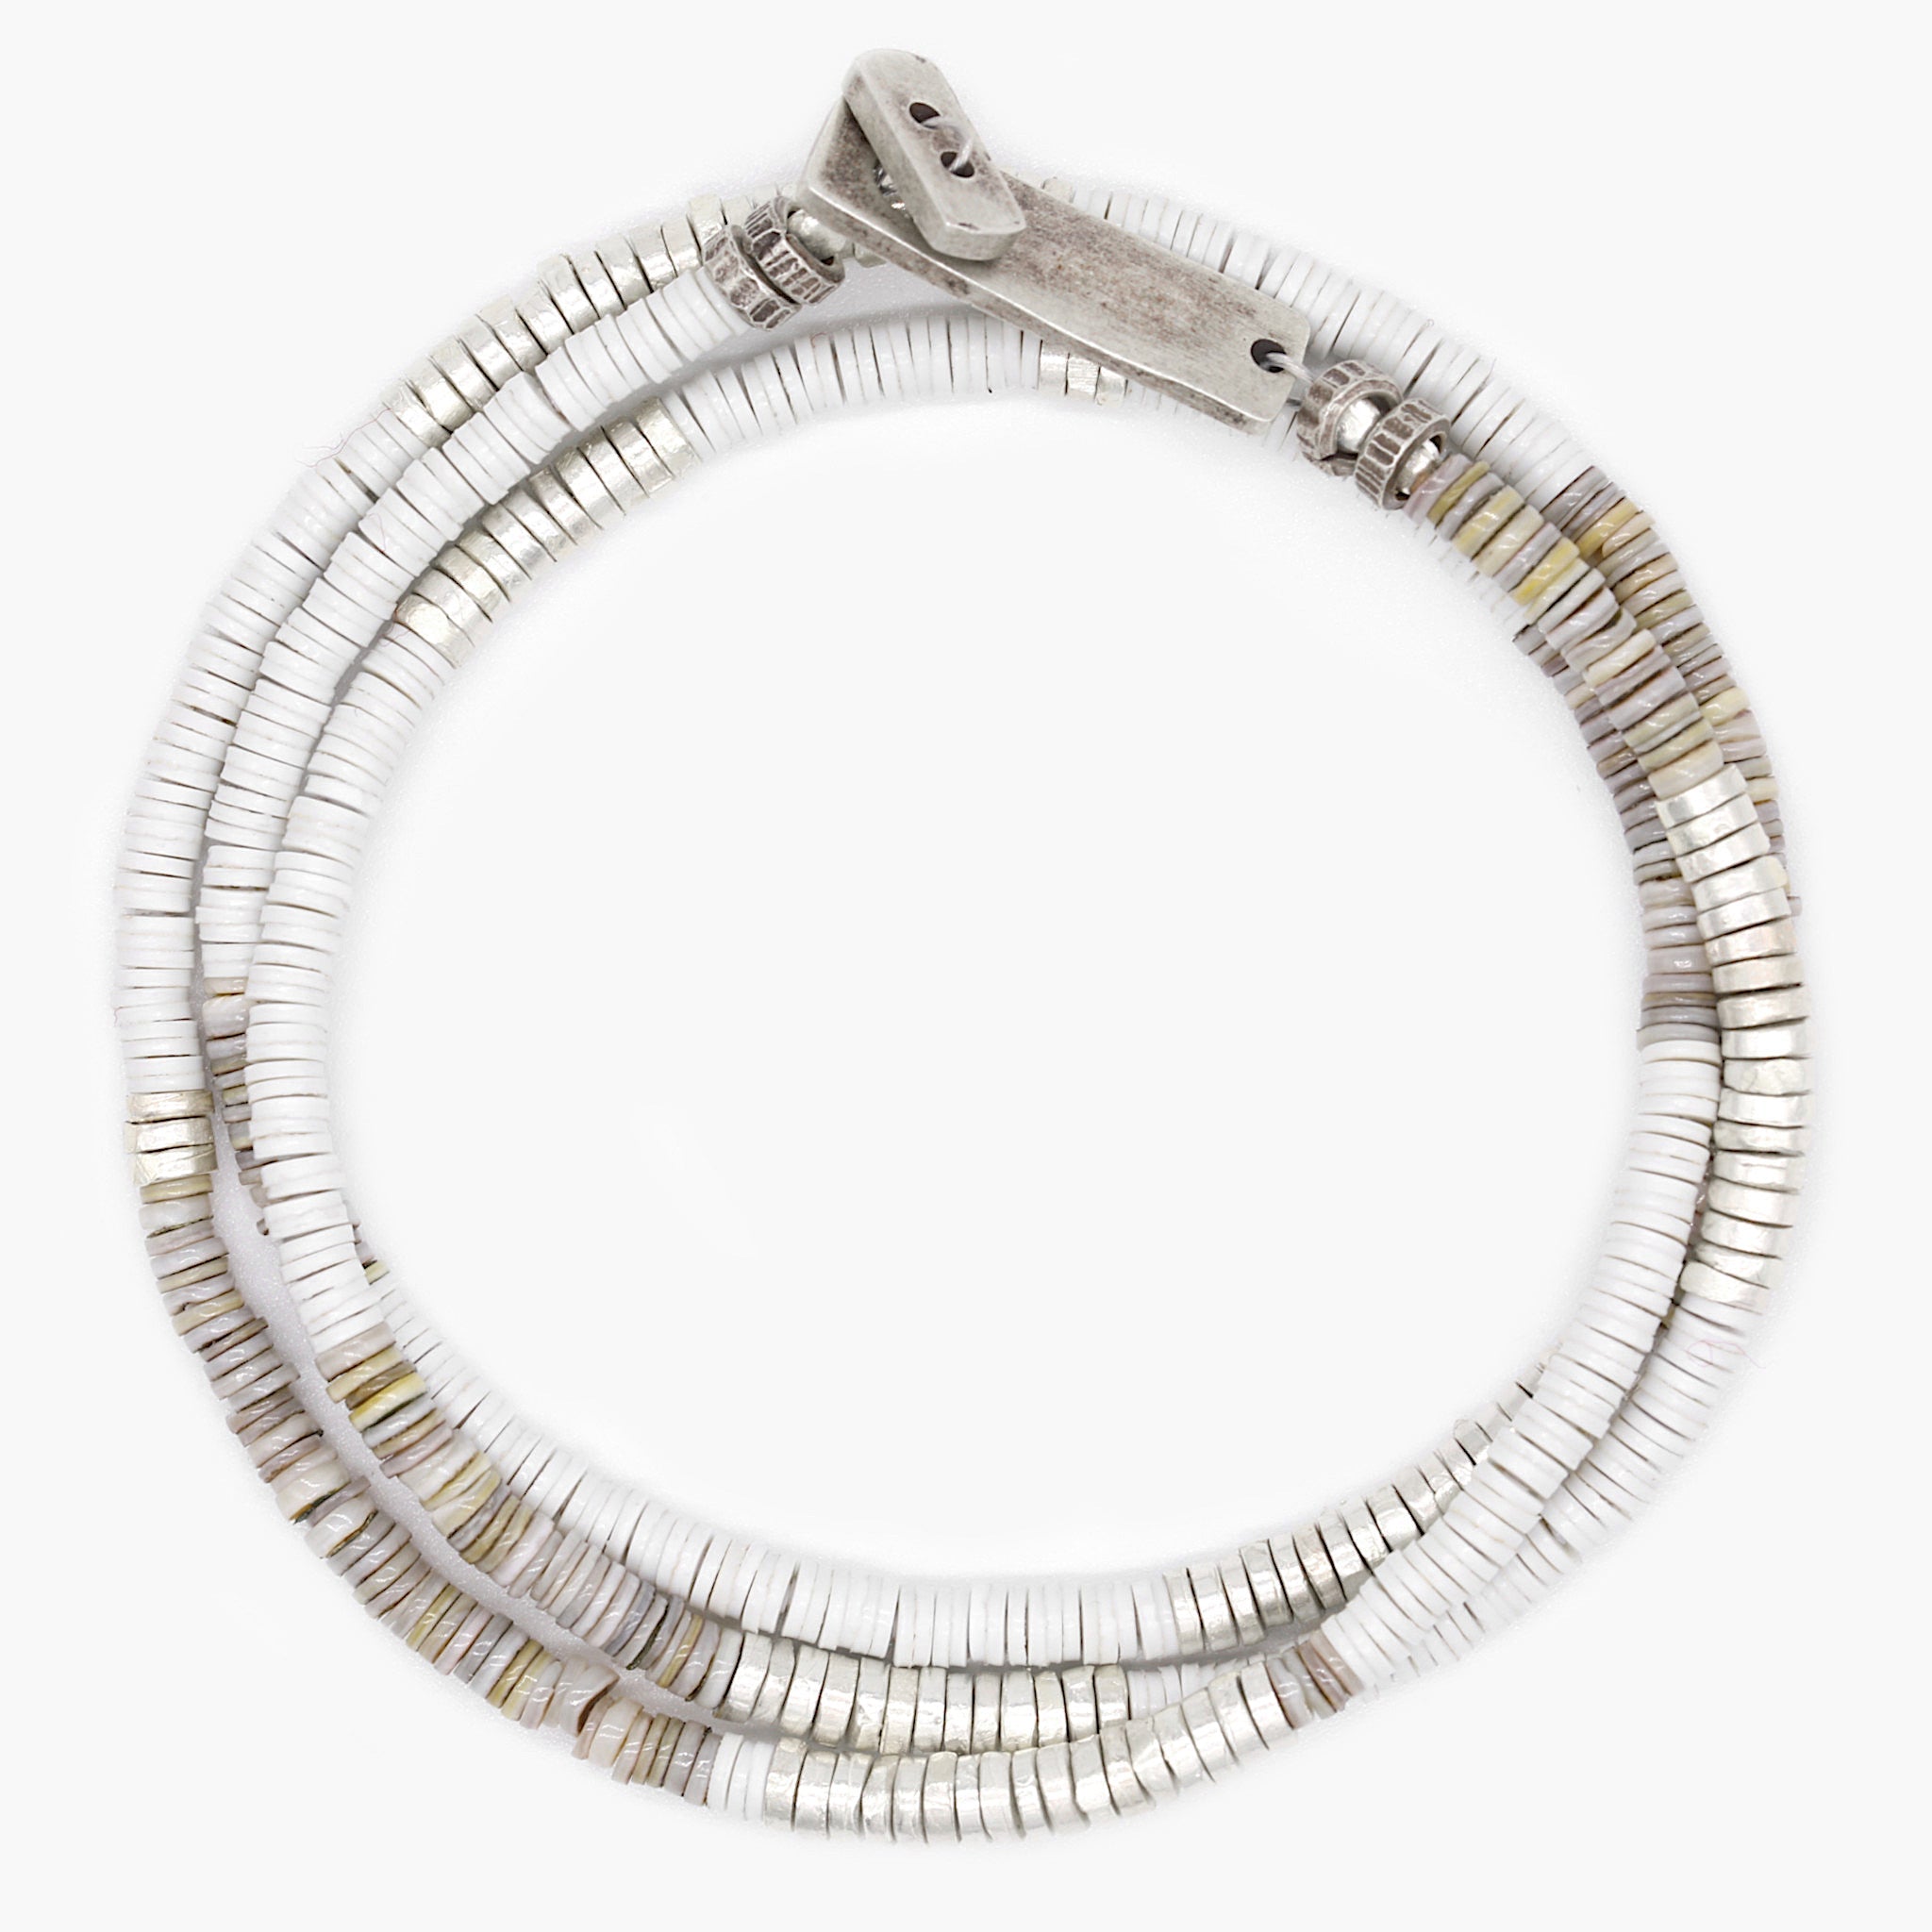 3 Laps Bracelet With Vinyl And Sterling Silver Beads (Shell)-Bracelet-Kompsós